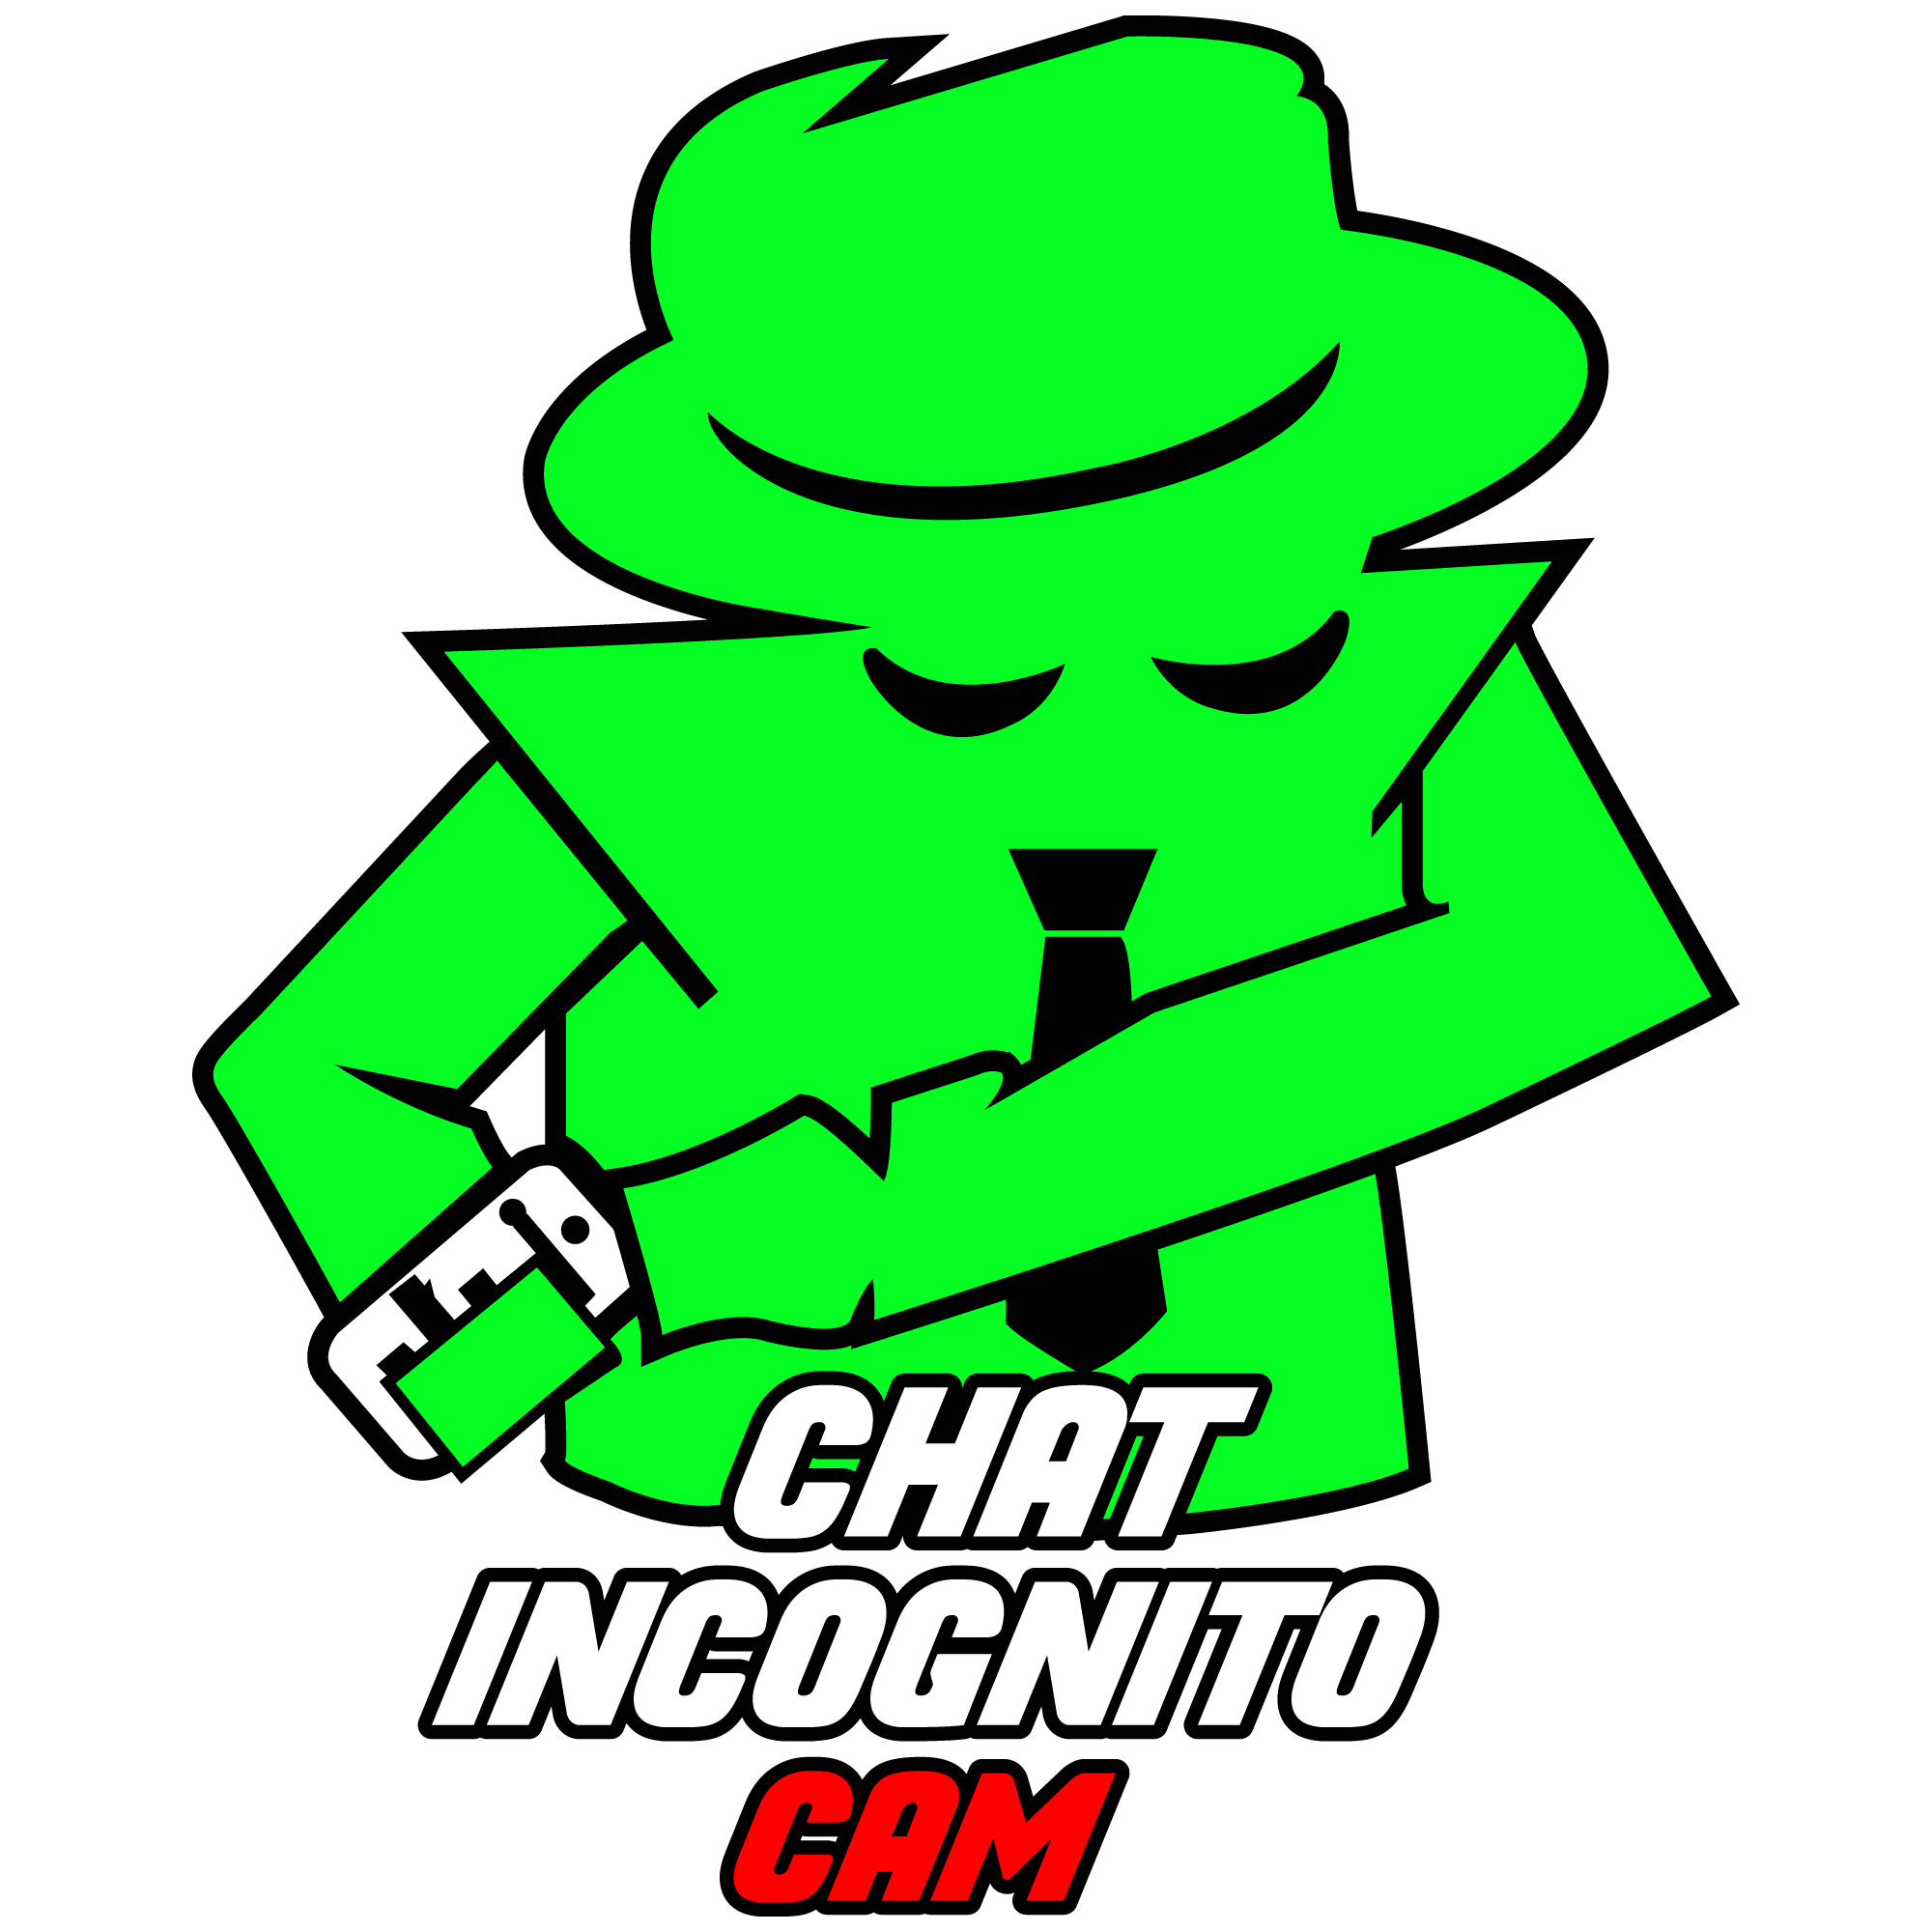 Chat Incognito CAM